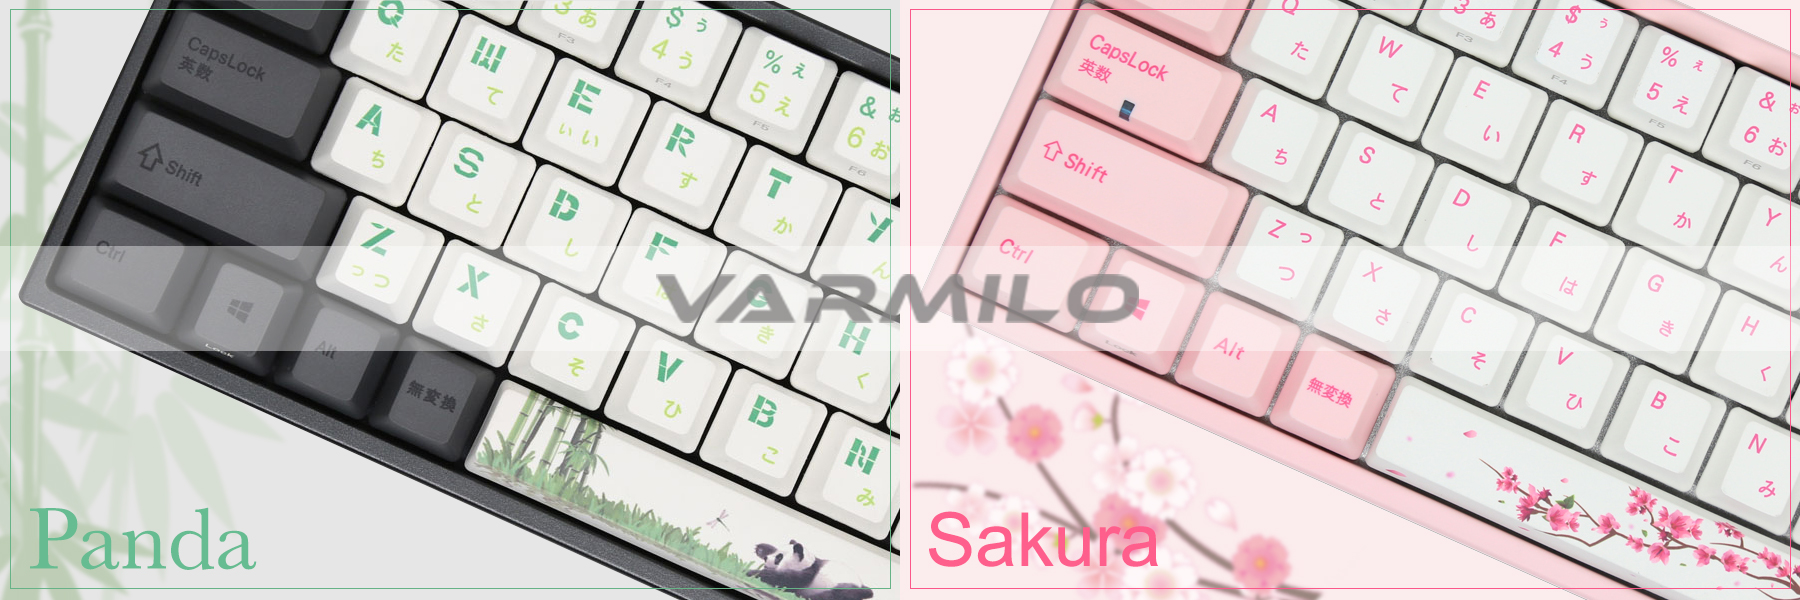 中国メカニカルキーボードブランド Varmilo の日本初の正規代理店として Sakura Panda の予約販売を開始 株式会社フェルマーのプレスリリース